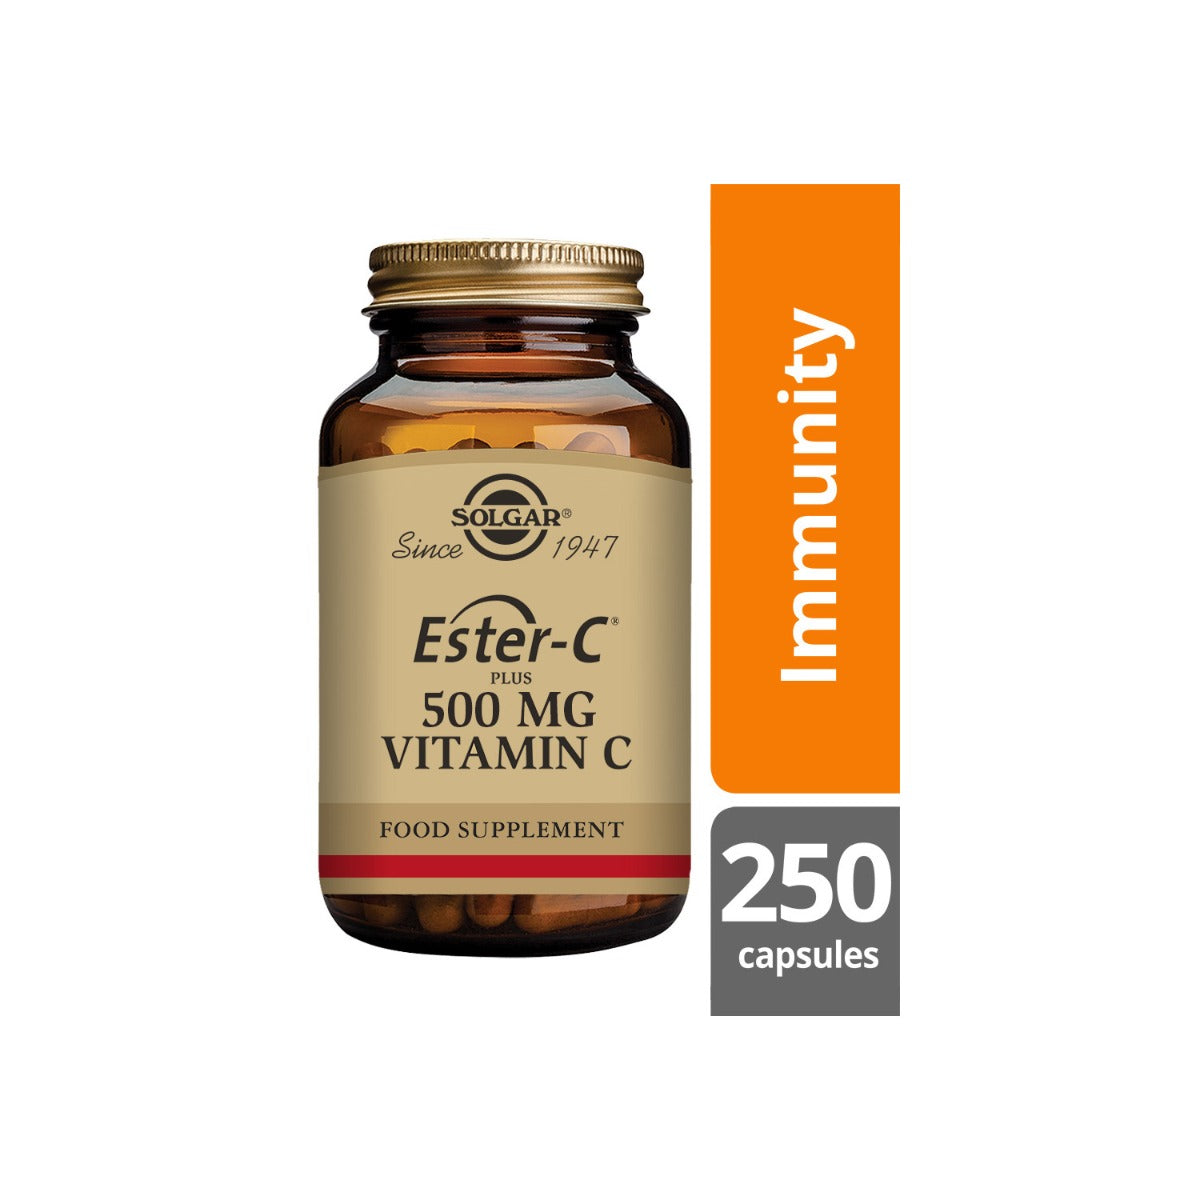 Solgar® Ester-C Plus 500 mg Vitamin C Vegetable Capsules - Pack of 250